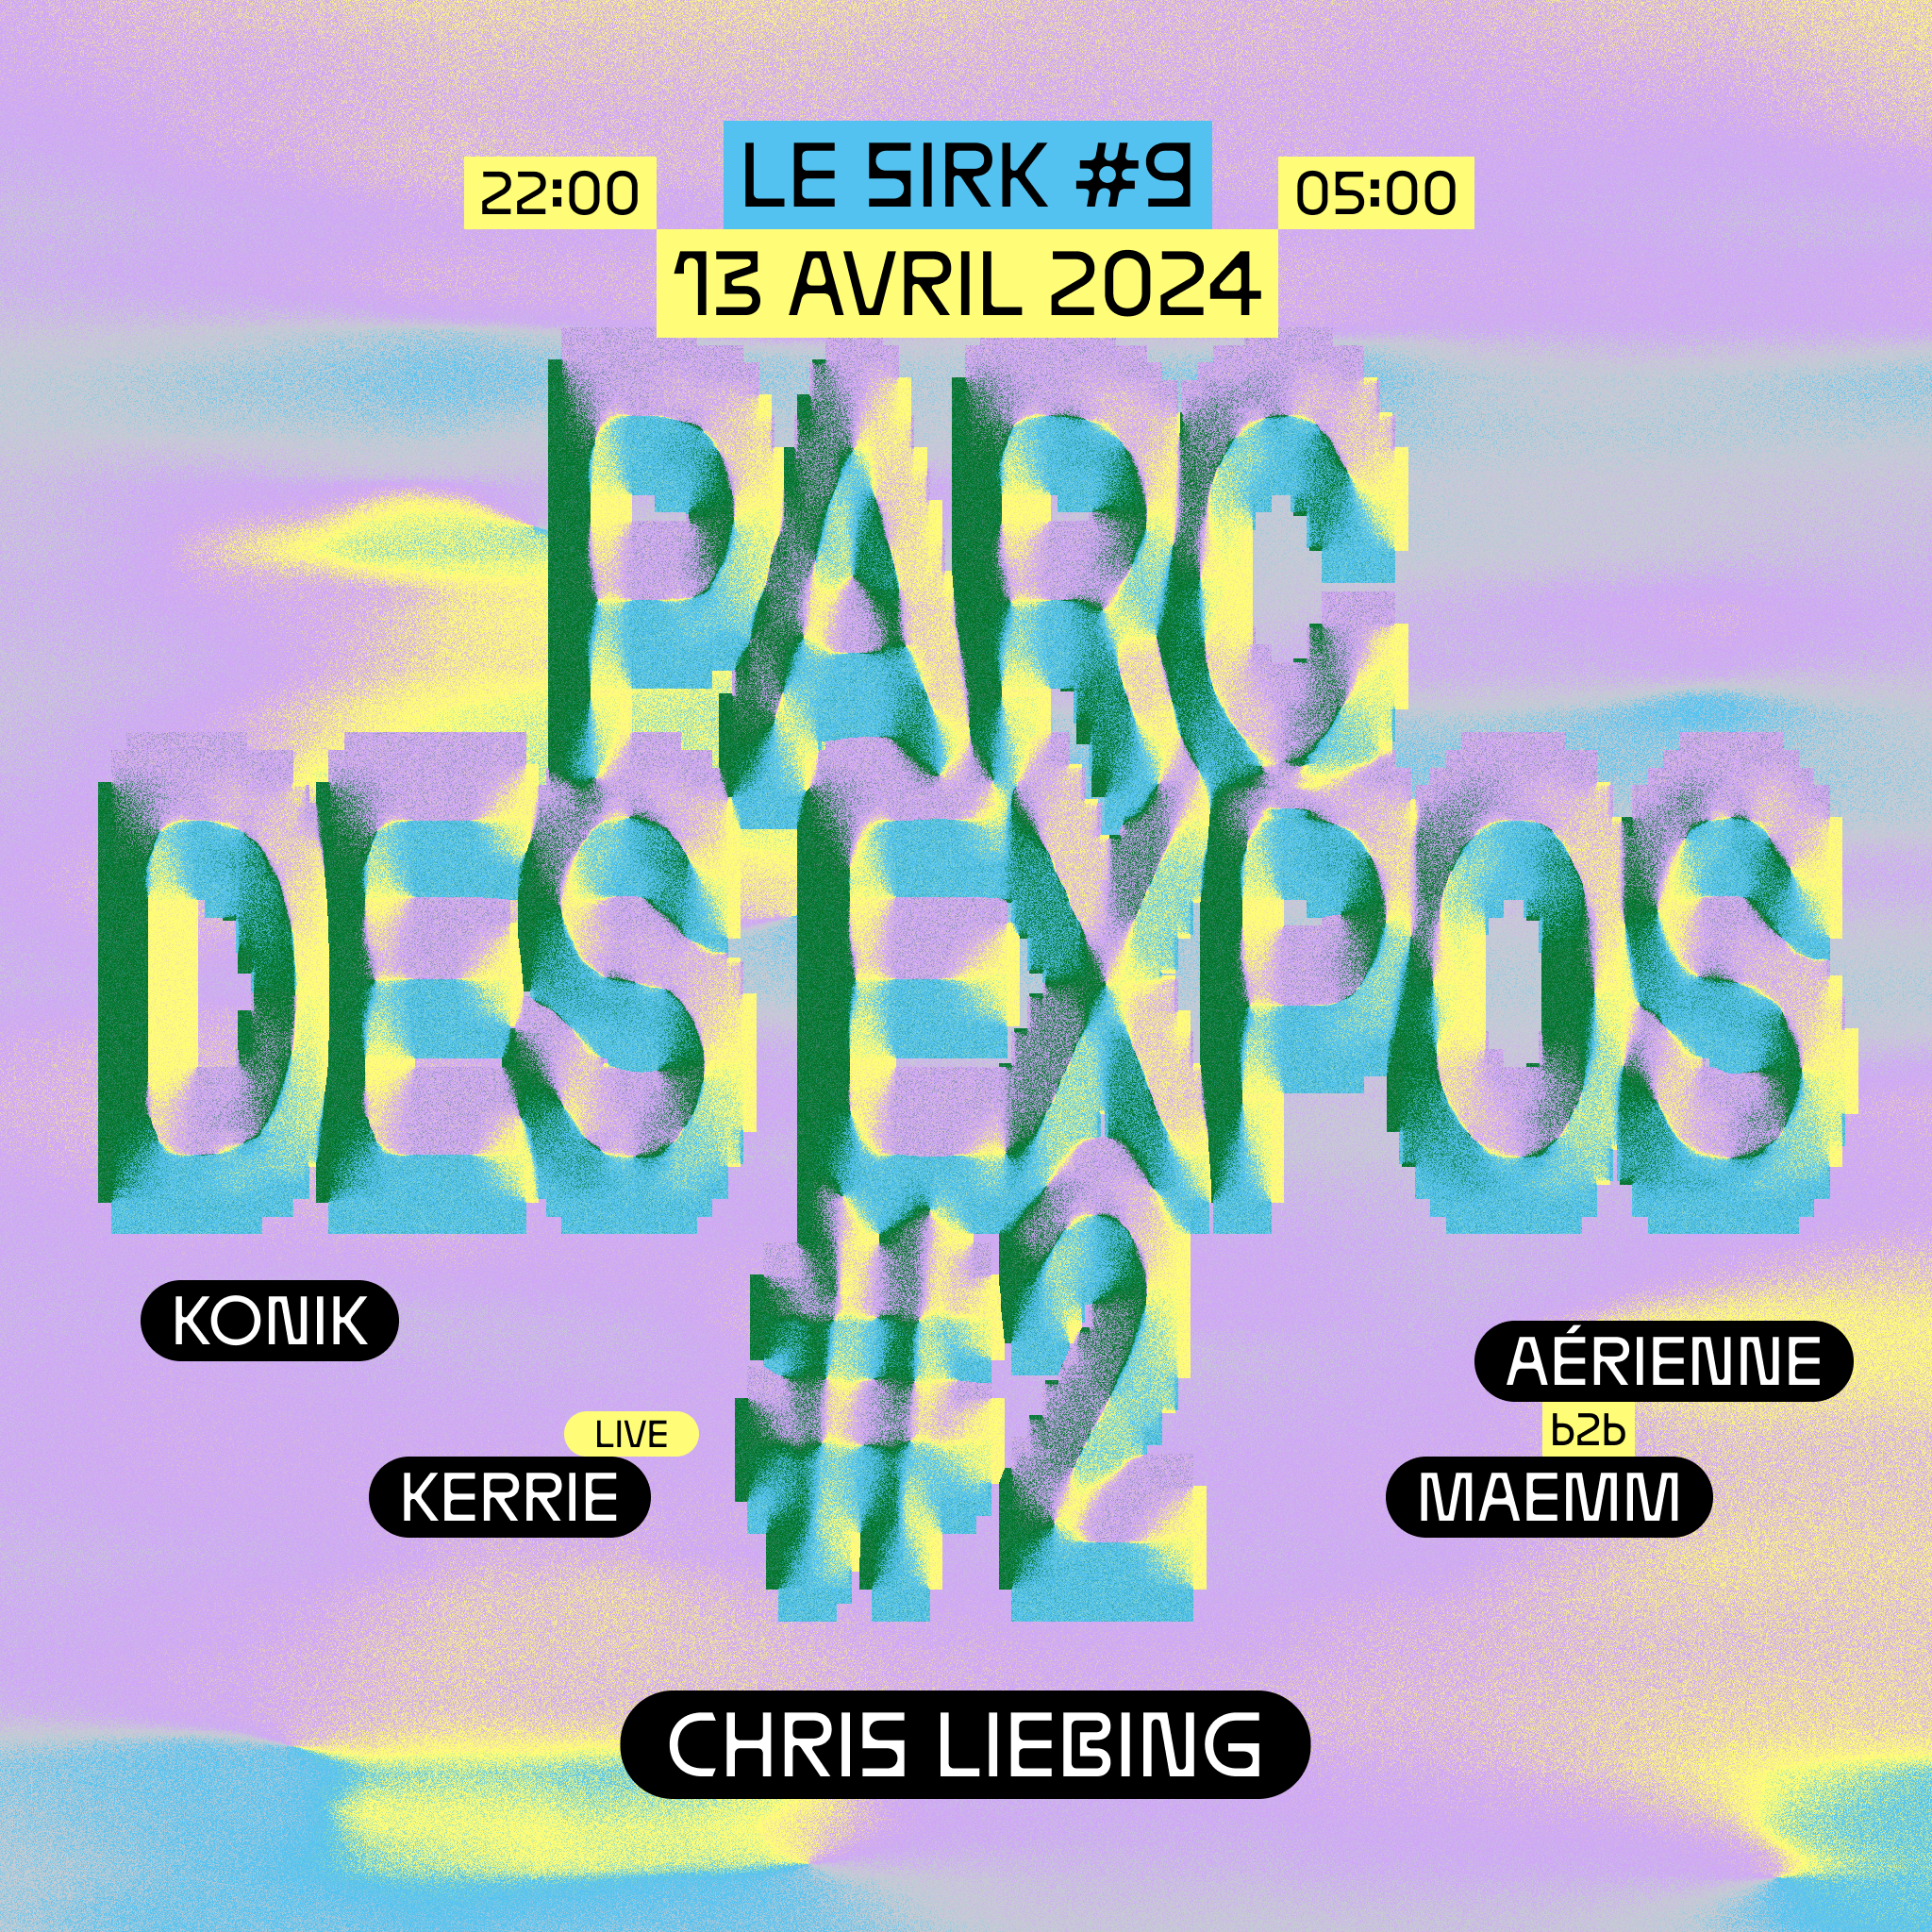 Le SIRK #9 at Parc des Expos #2 - Página frontal